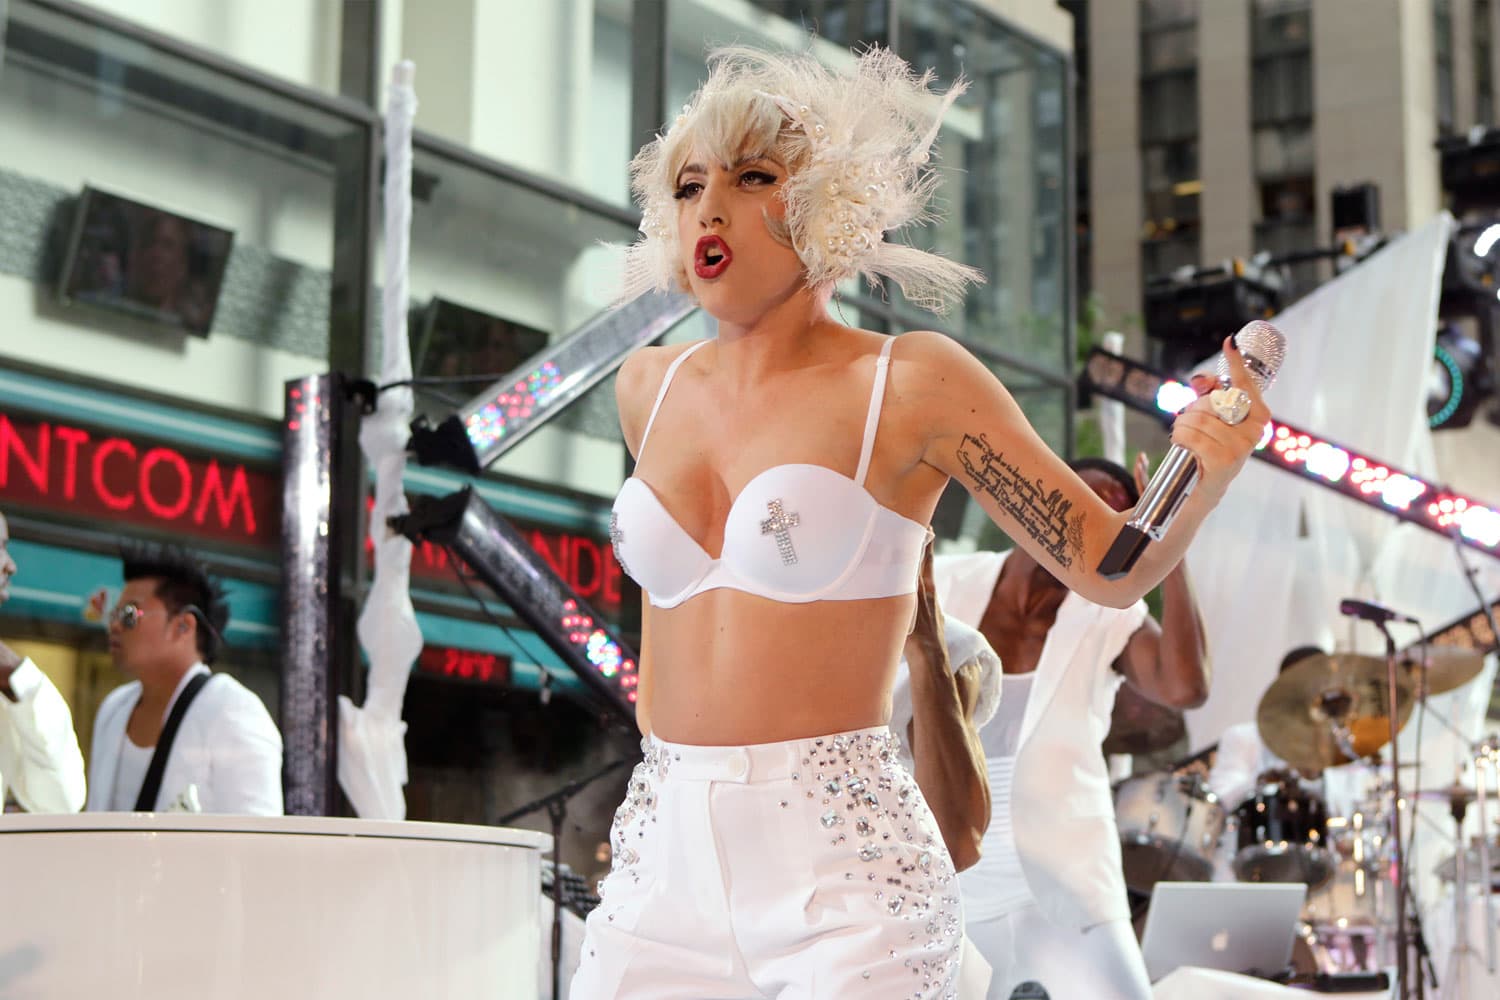 Lo excéntrico y estético invade la carrera musical de Lady Gaga